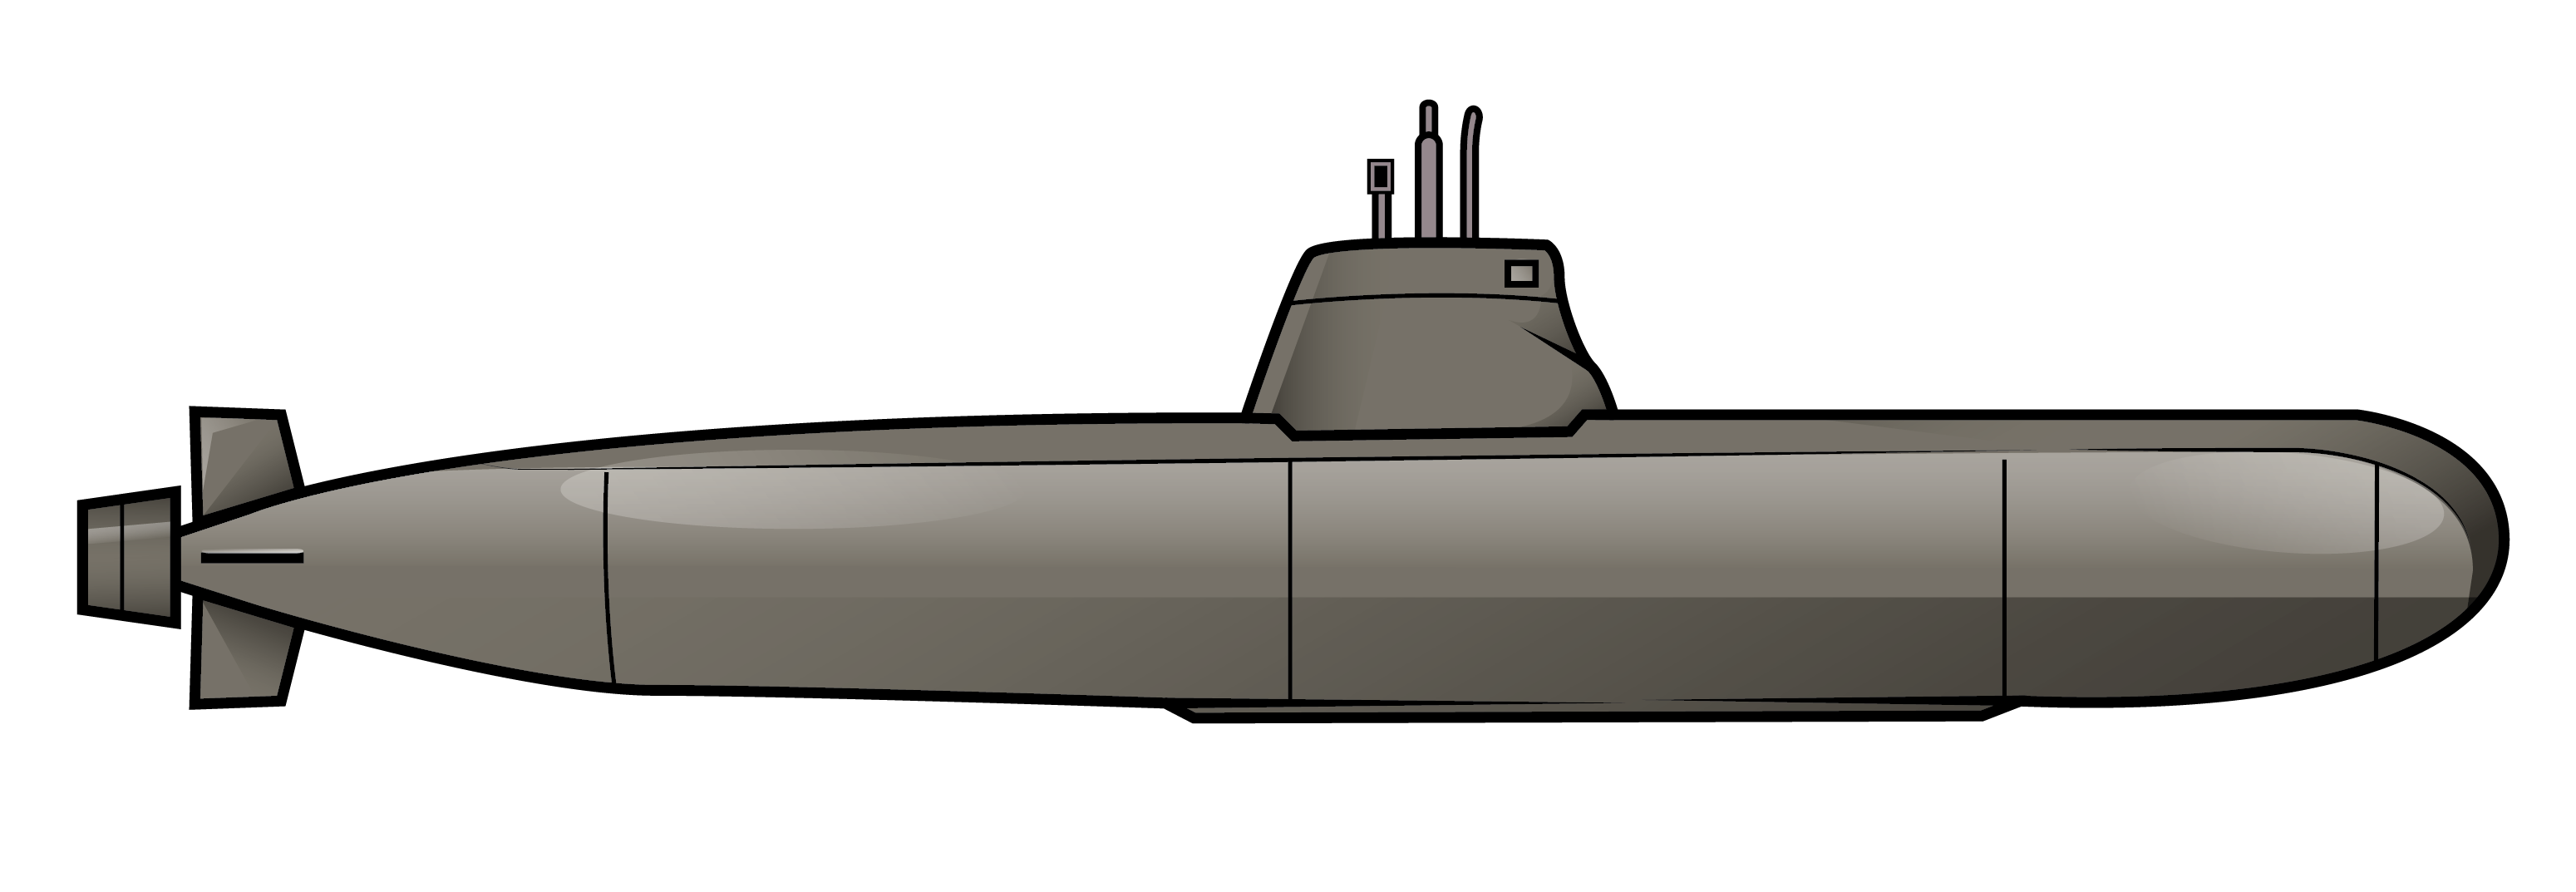 submarine cartoon images